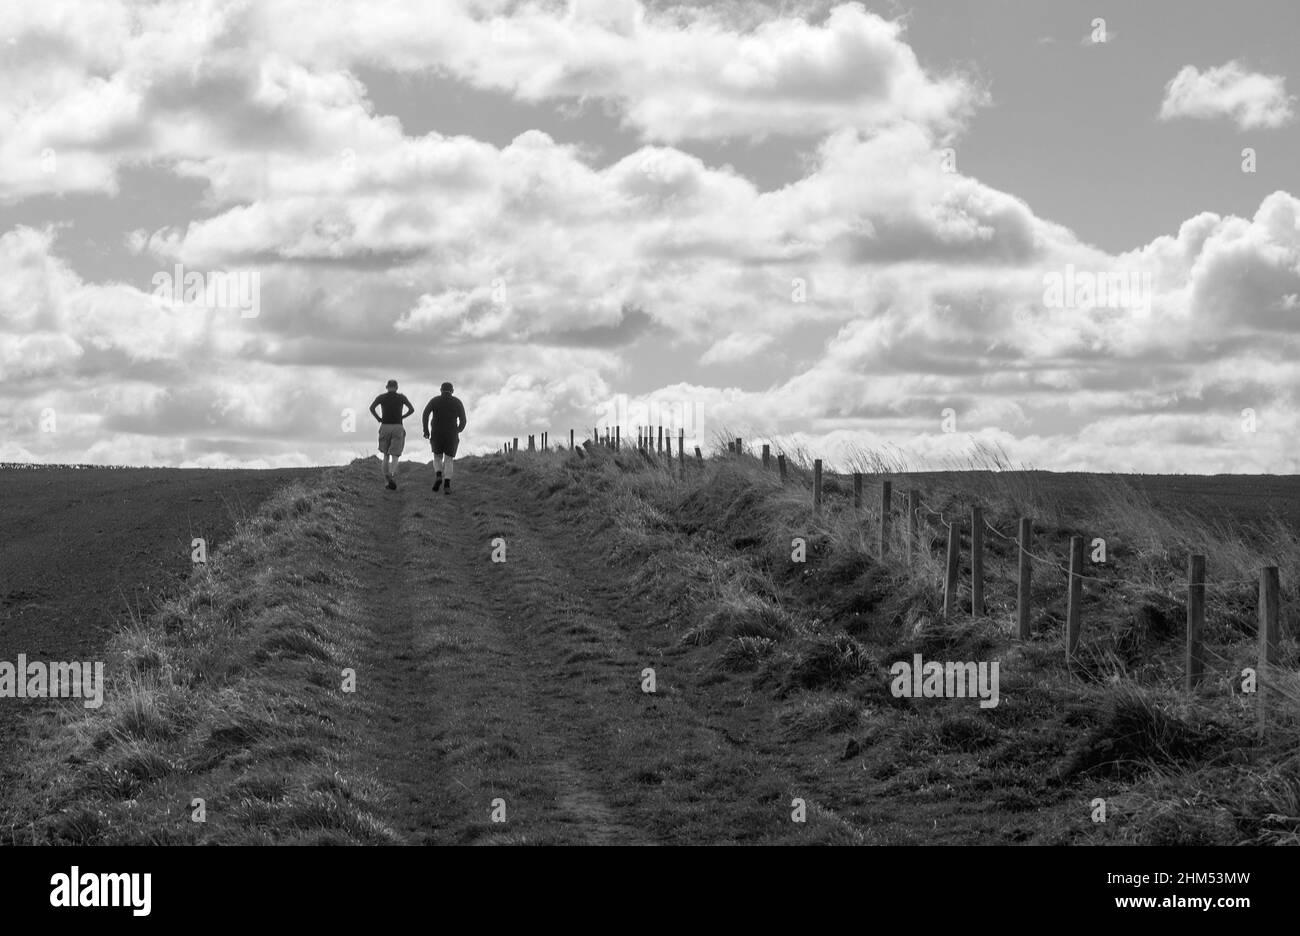 Monobild von zwei Männchen, die mit einem Zaun rechts über Felder zum Horizont joggen und gegen die Wolken silhouettiert wurden Stockfoto